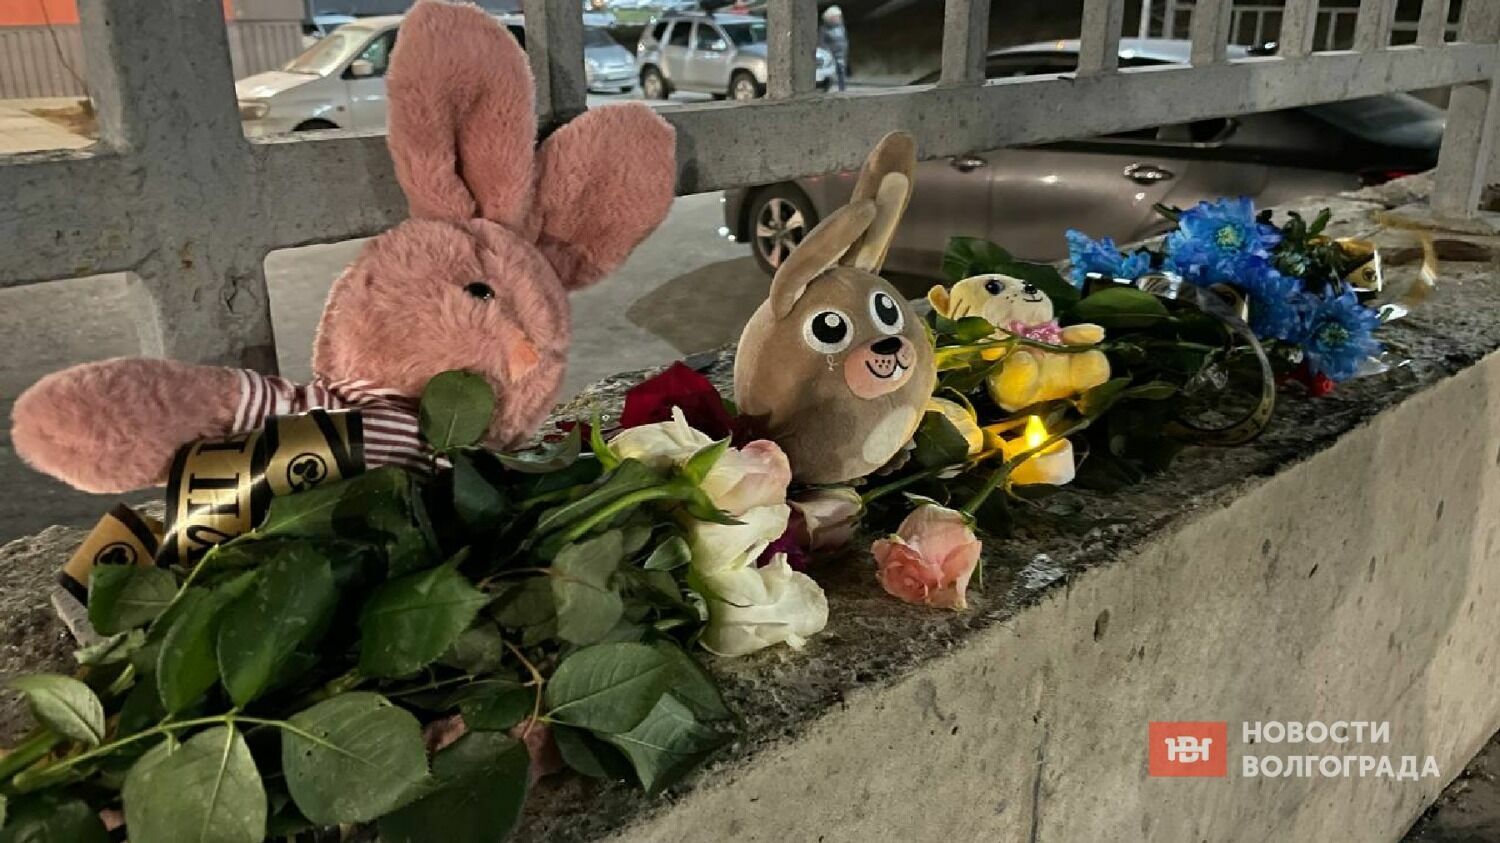 Горожане принесли к месту гибели малыша, цветы, игрушки и свечи